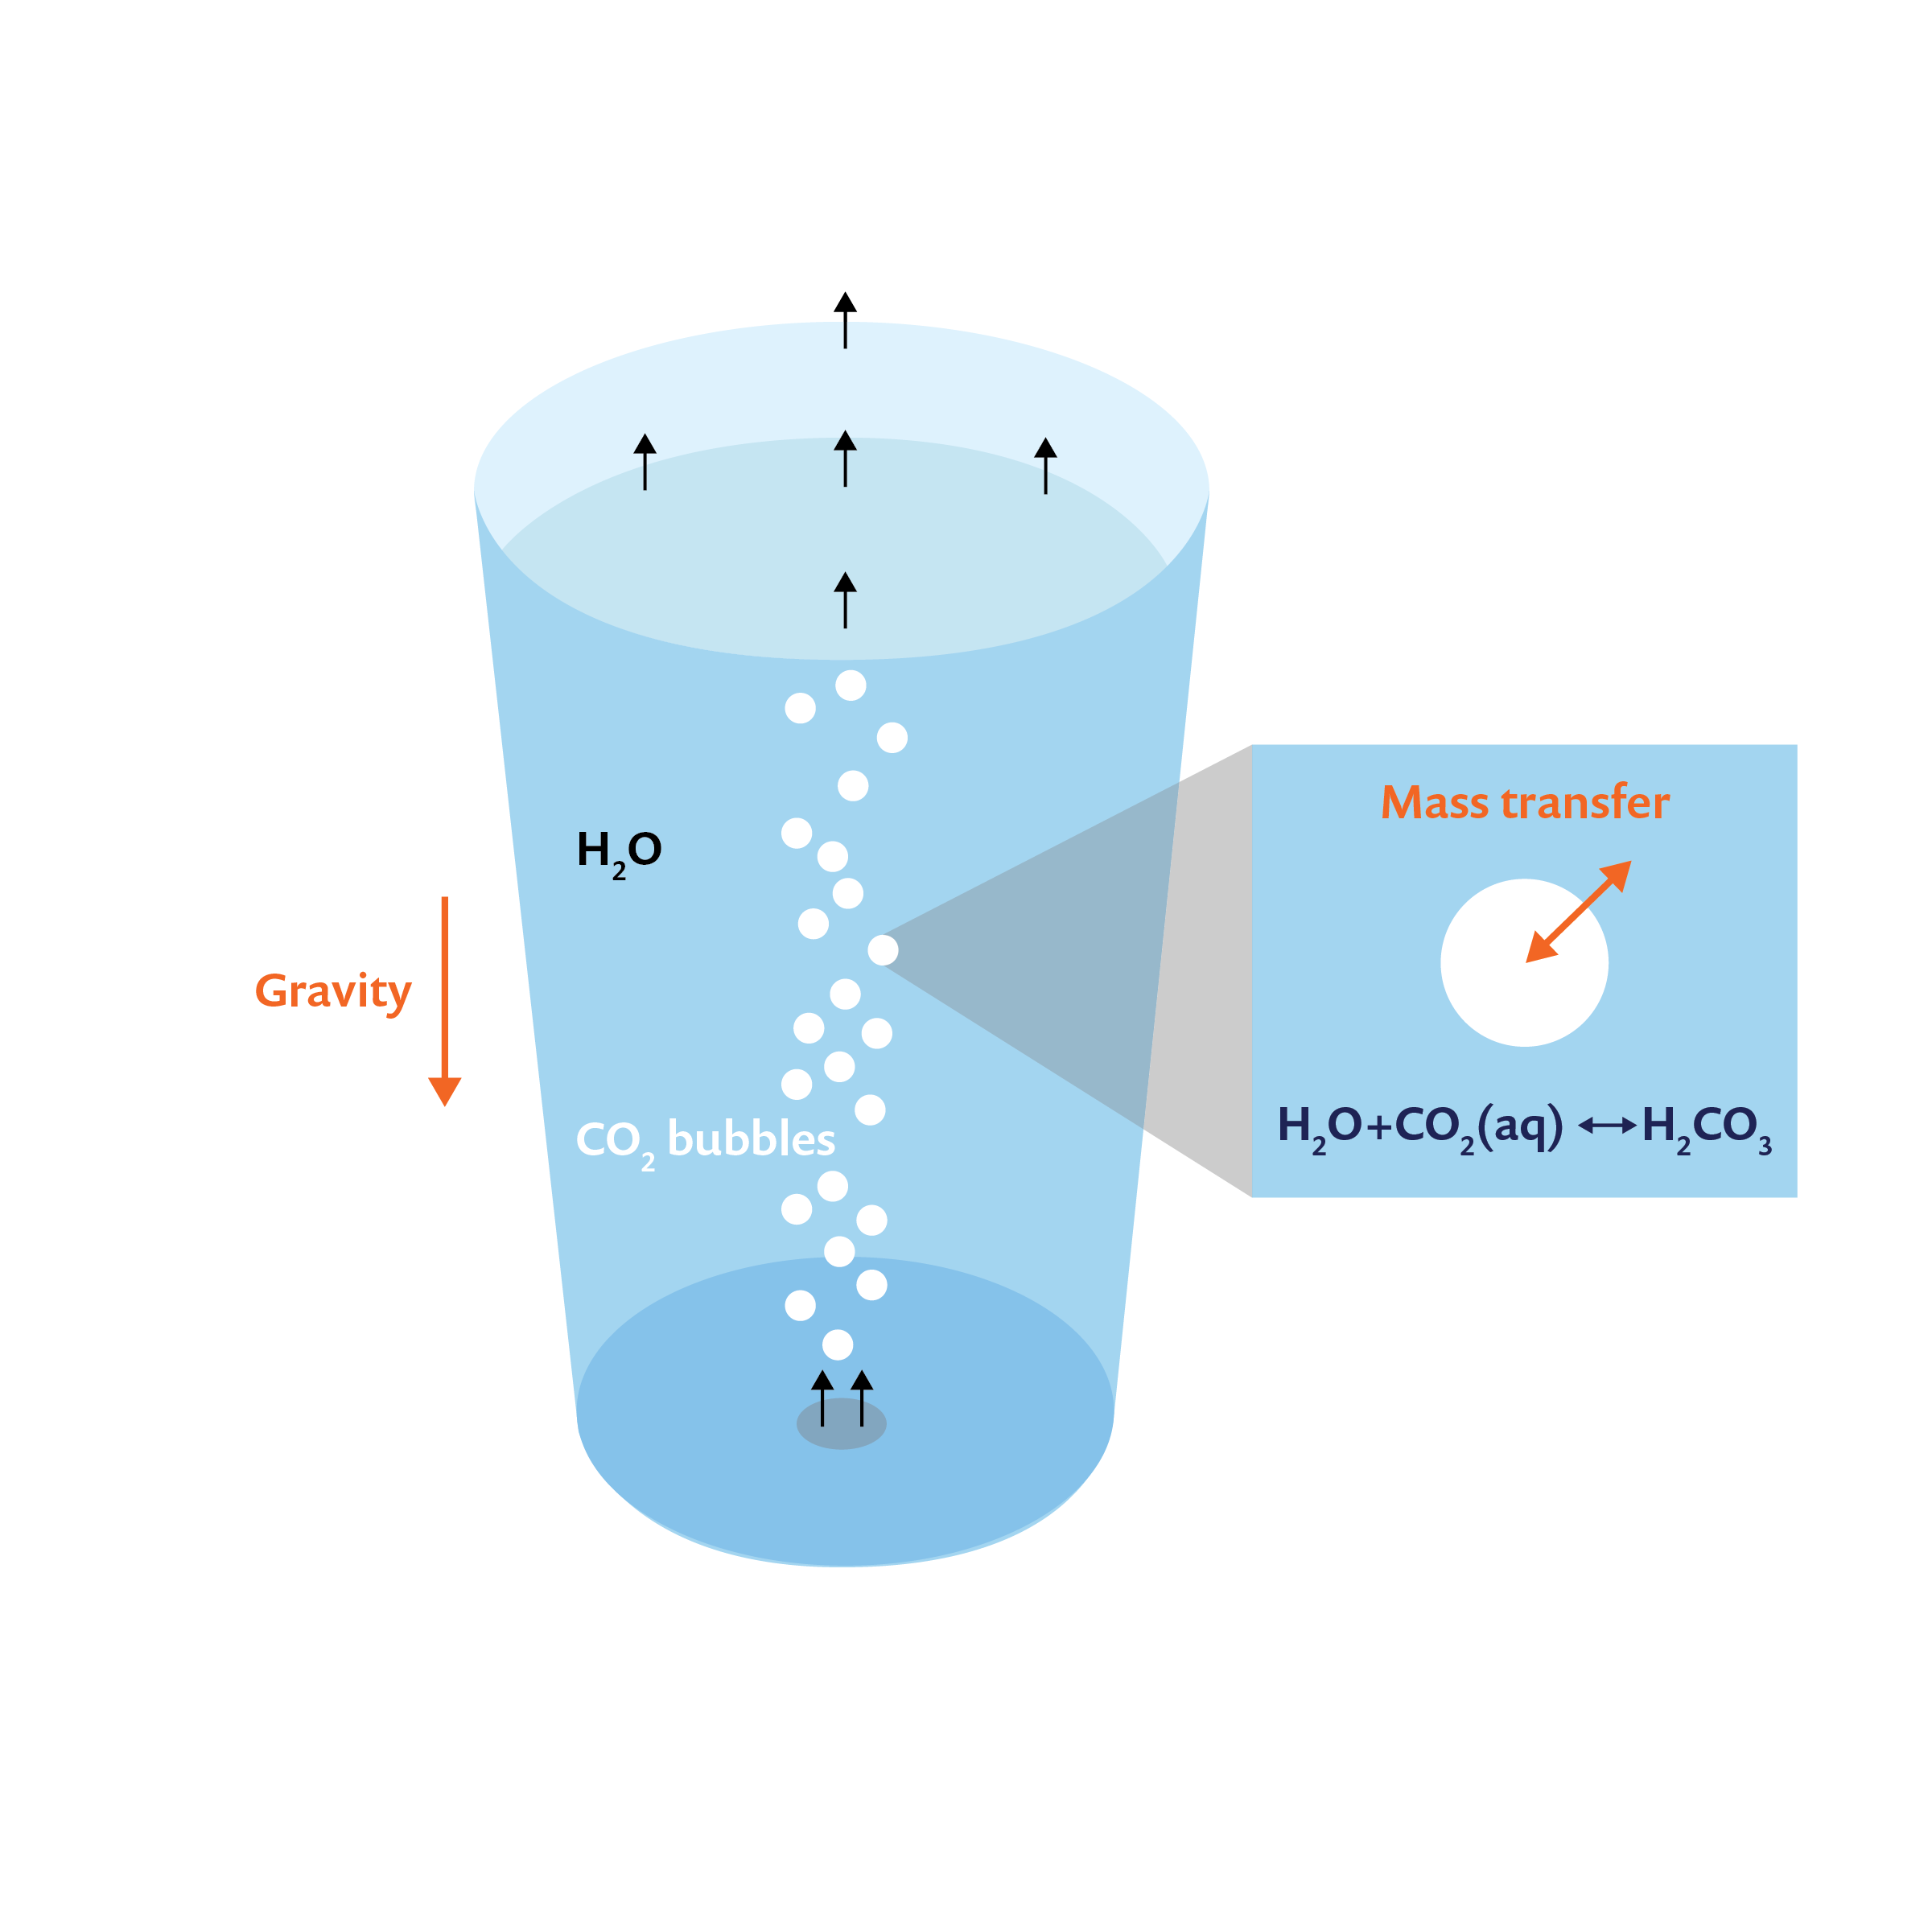 解释一杯汽水的碳酸化过程的图表。